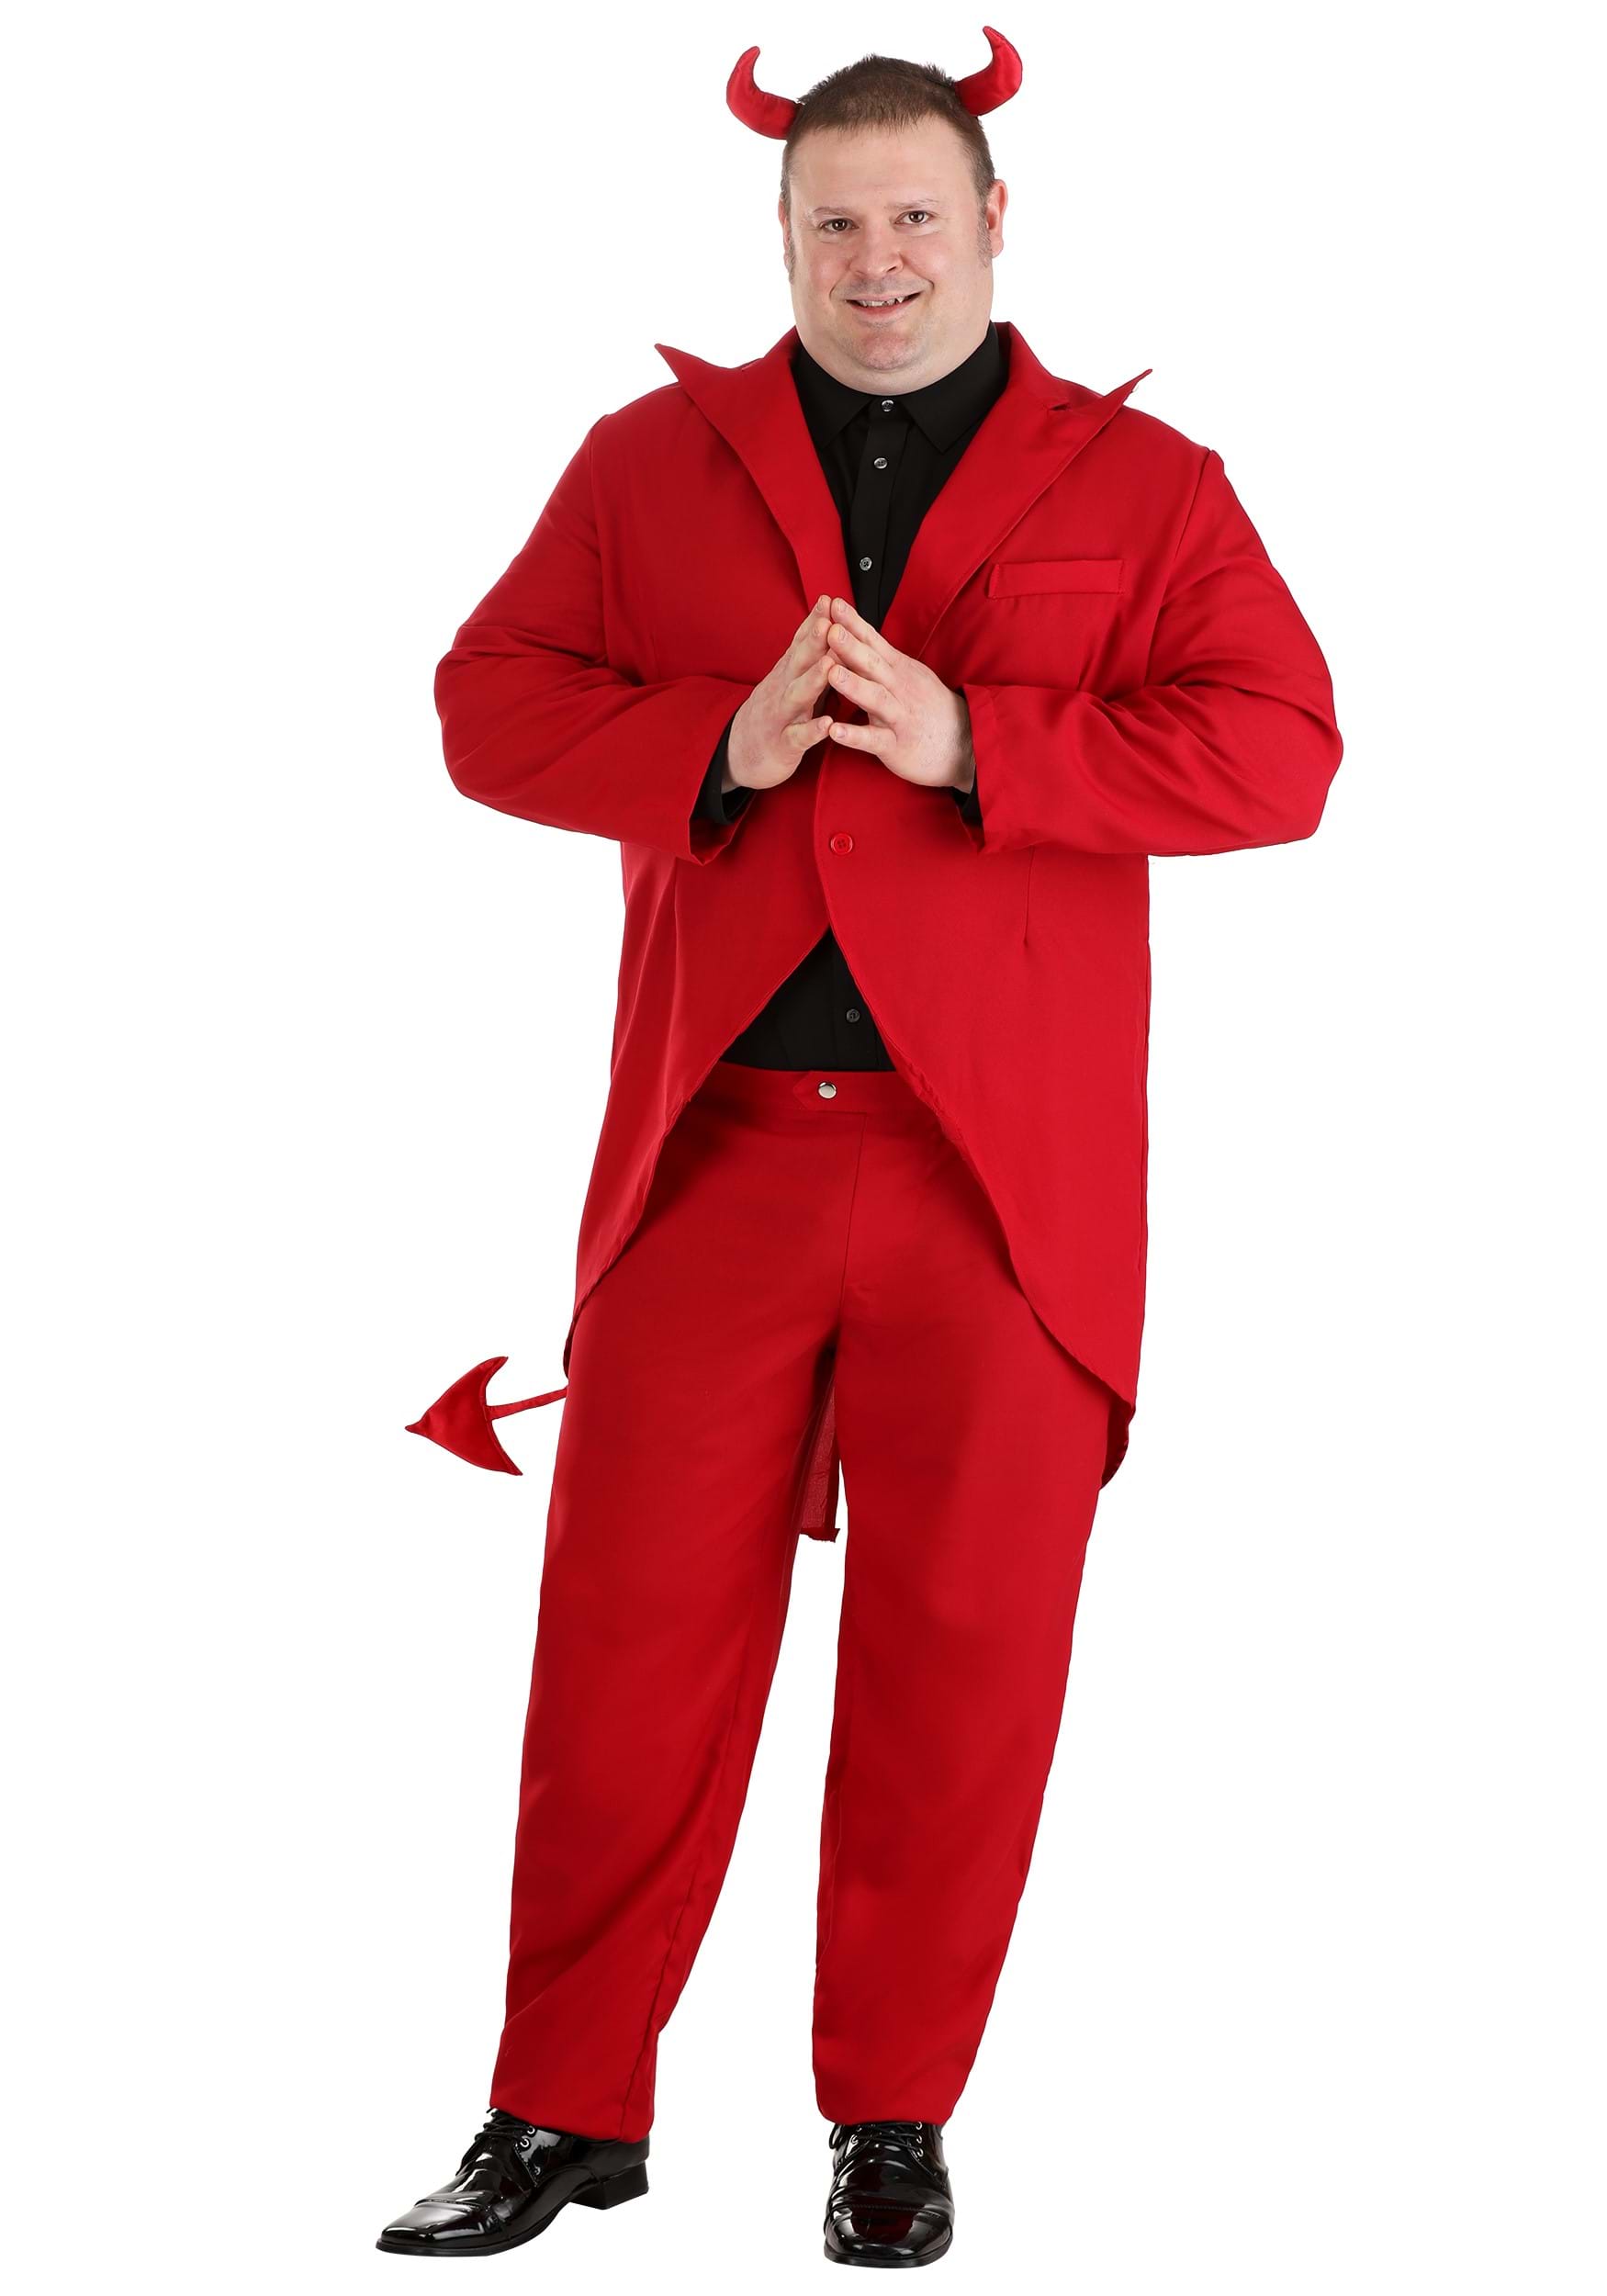 Red Suit Devil Costume for Plus Size Men